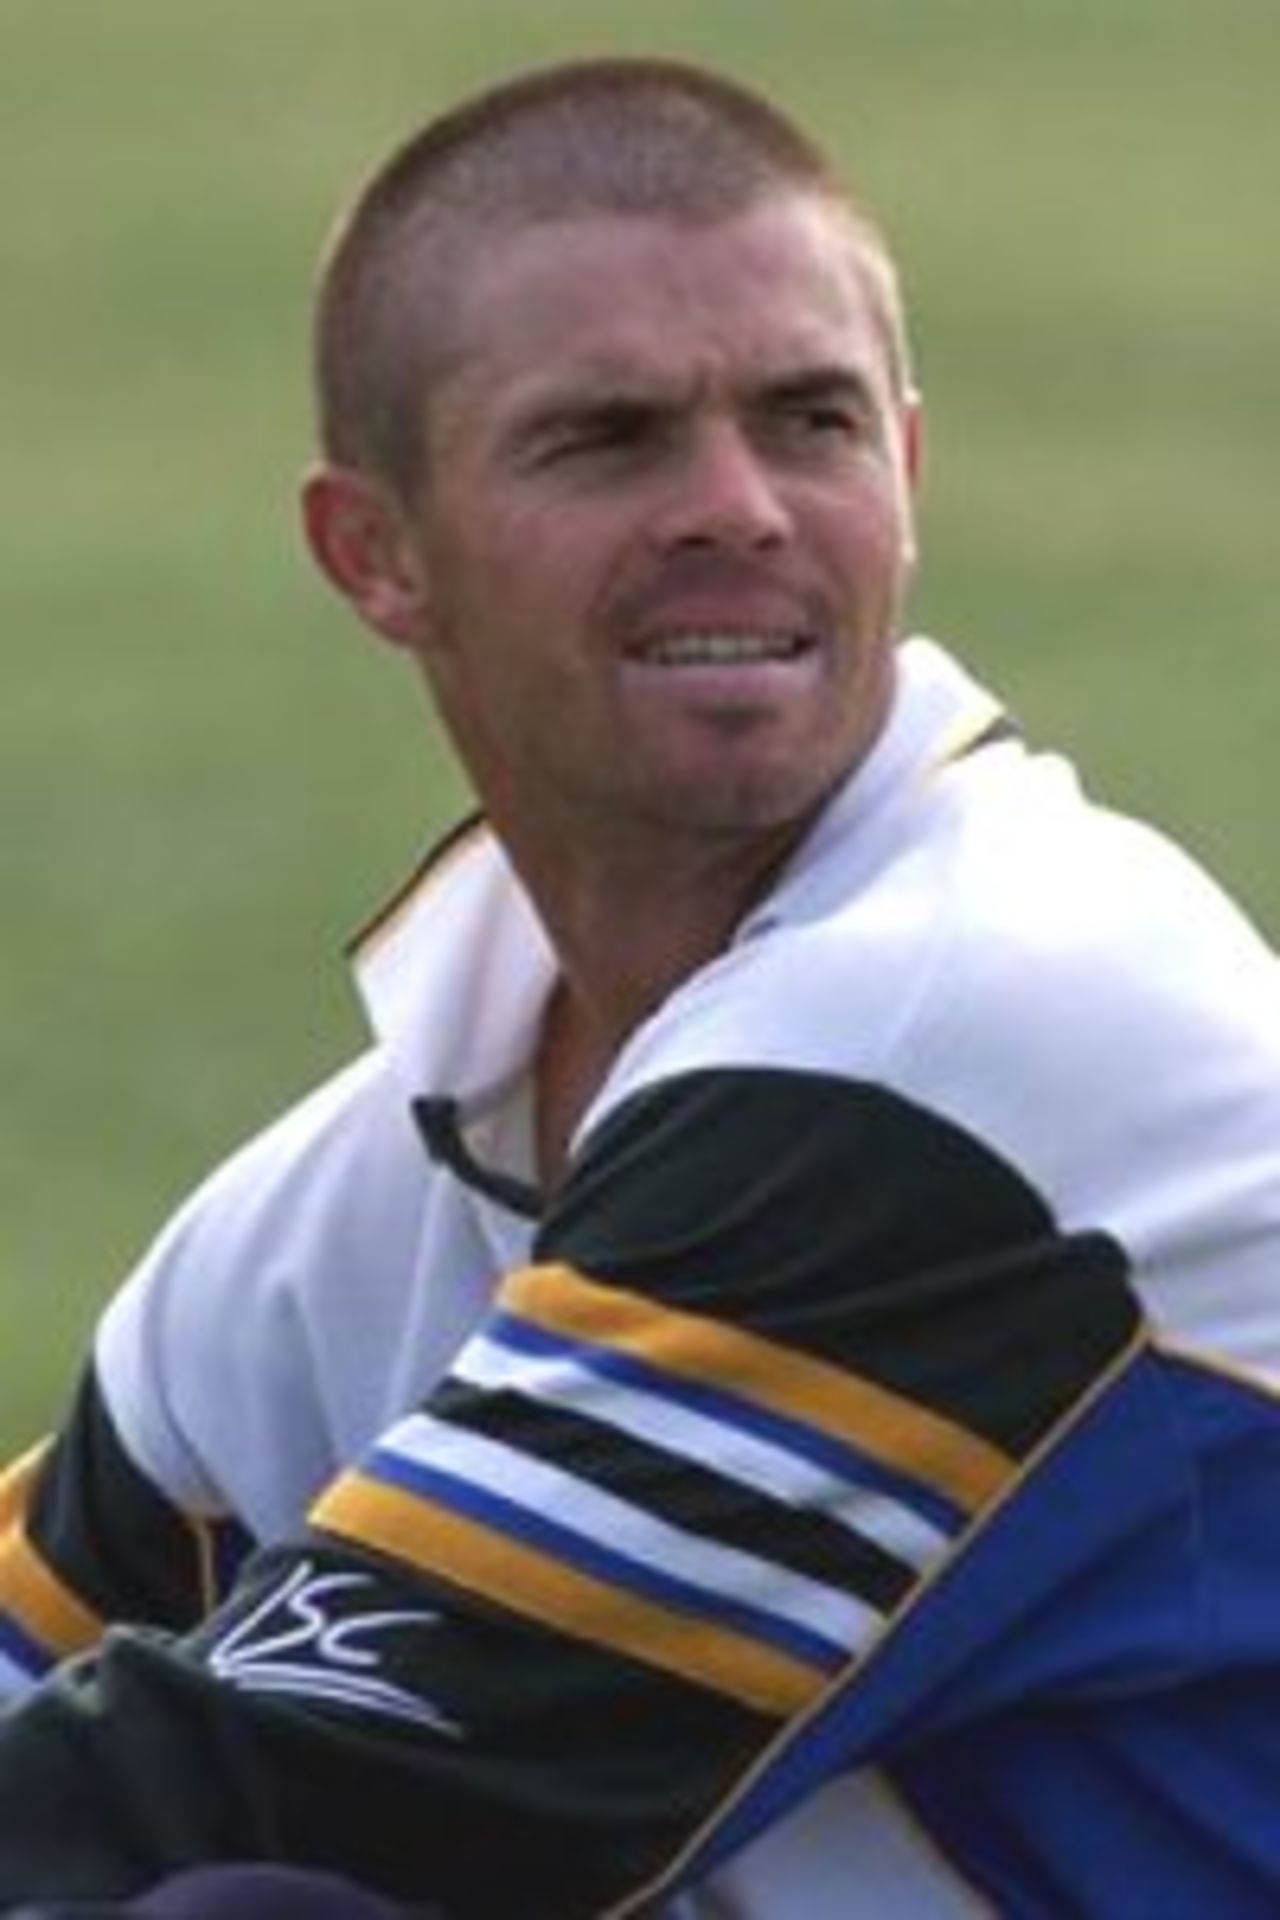 17 Mar 2000: Greg Blewett of Australia looks on during training at Nelson Park, Napier, New Zealand.